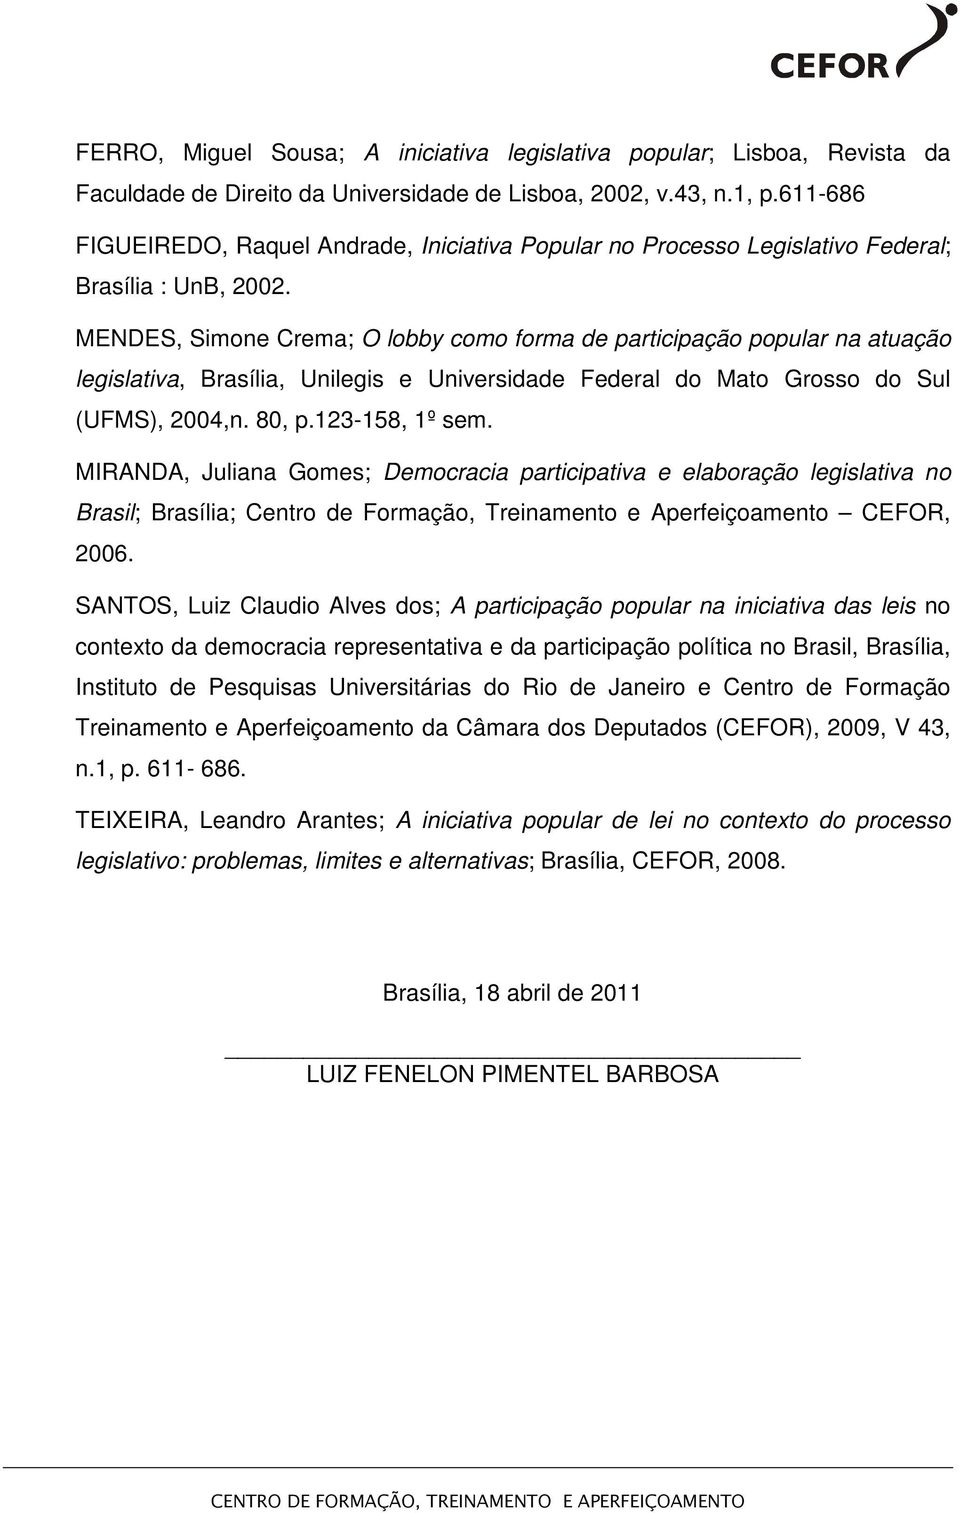 MENDES, Simone Crema; O lobby como forma de participação popular na atuação legislativa, Brasília, Unilegis e Universidade Federal do Mato Grosso do Sul (UFMS), 2004,n. 80, p.123-158, 1º sem.